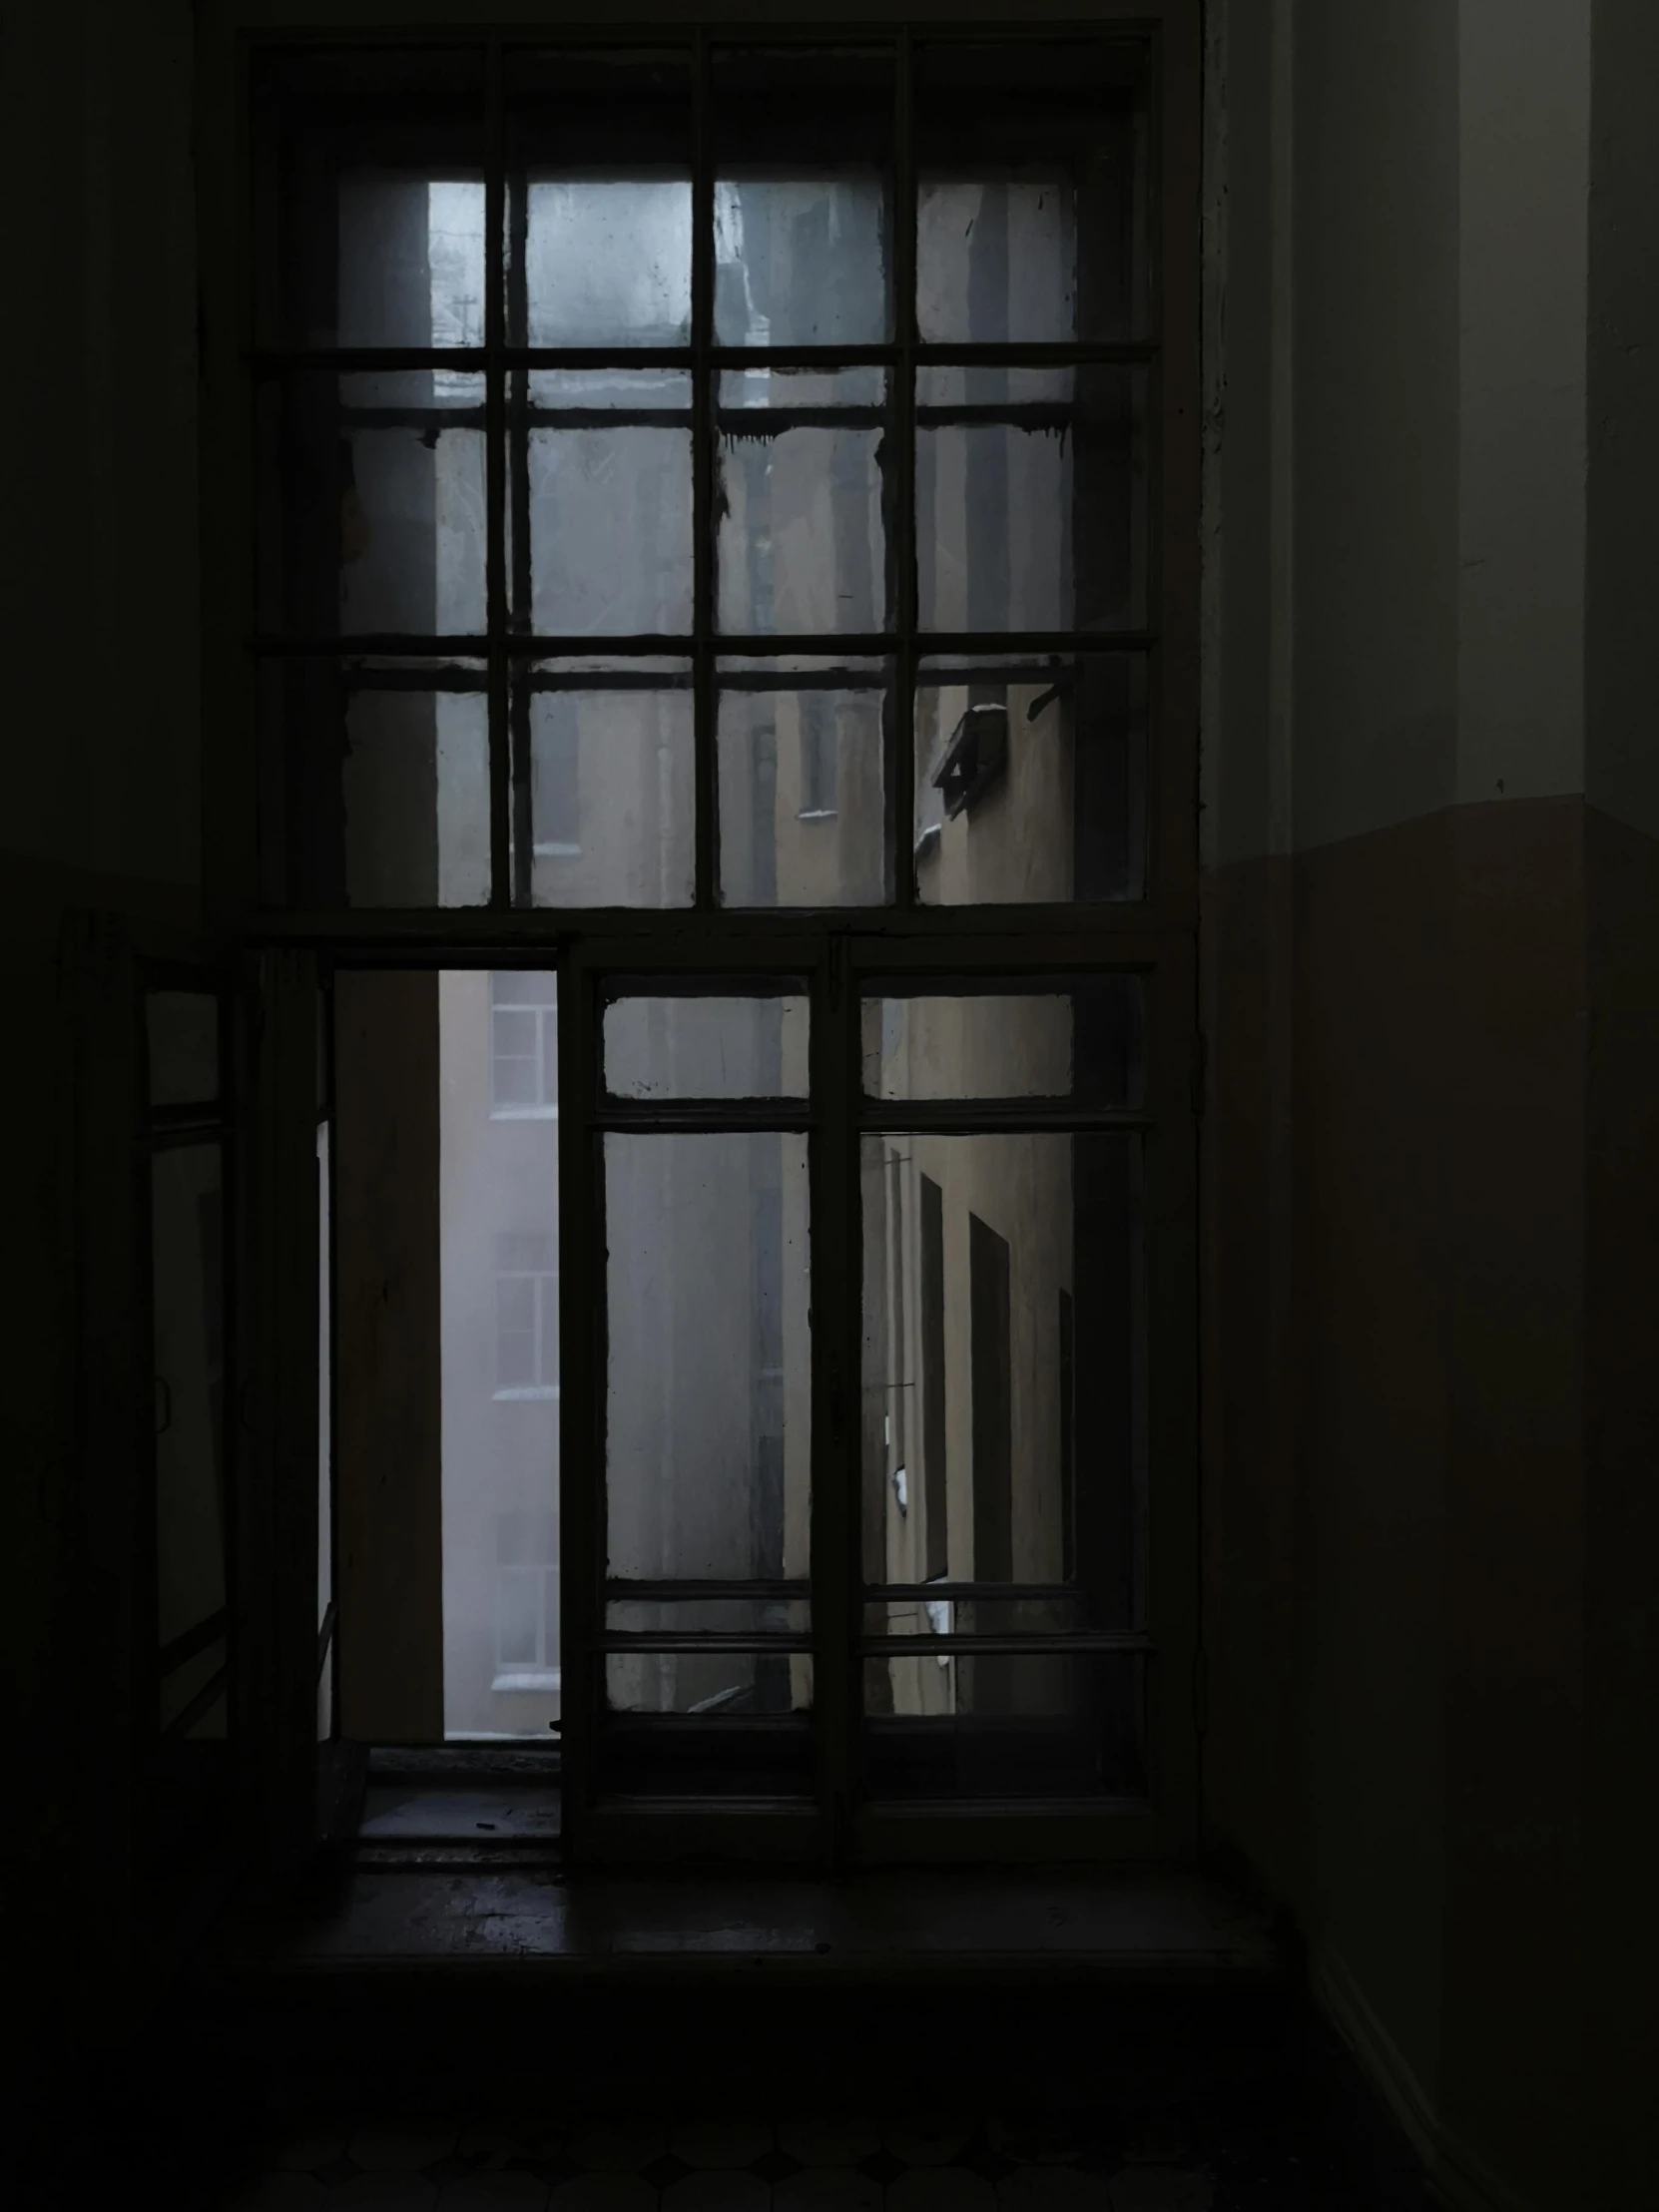 a doorway with glass doors lit up in the dark